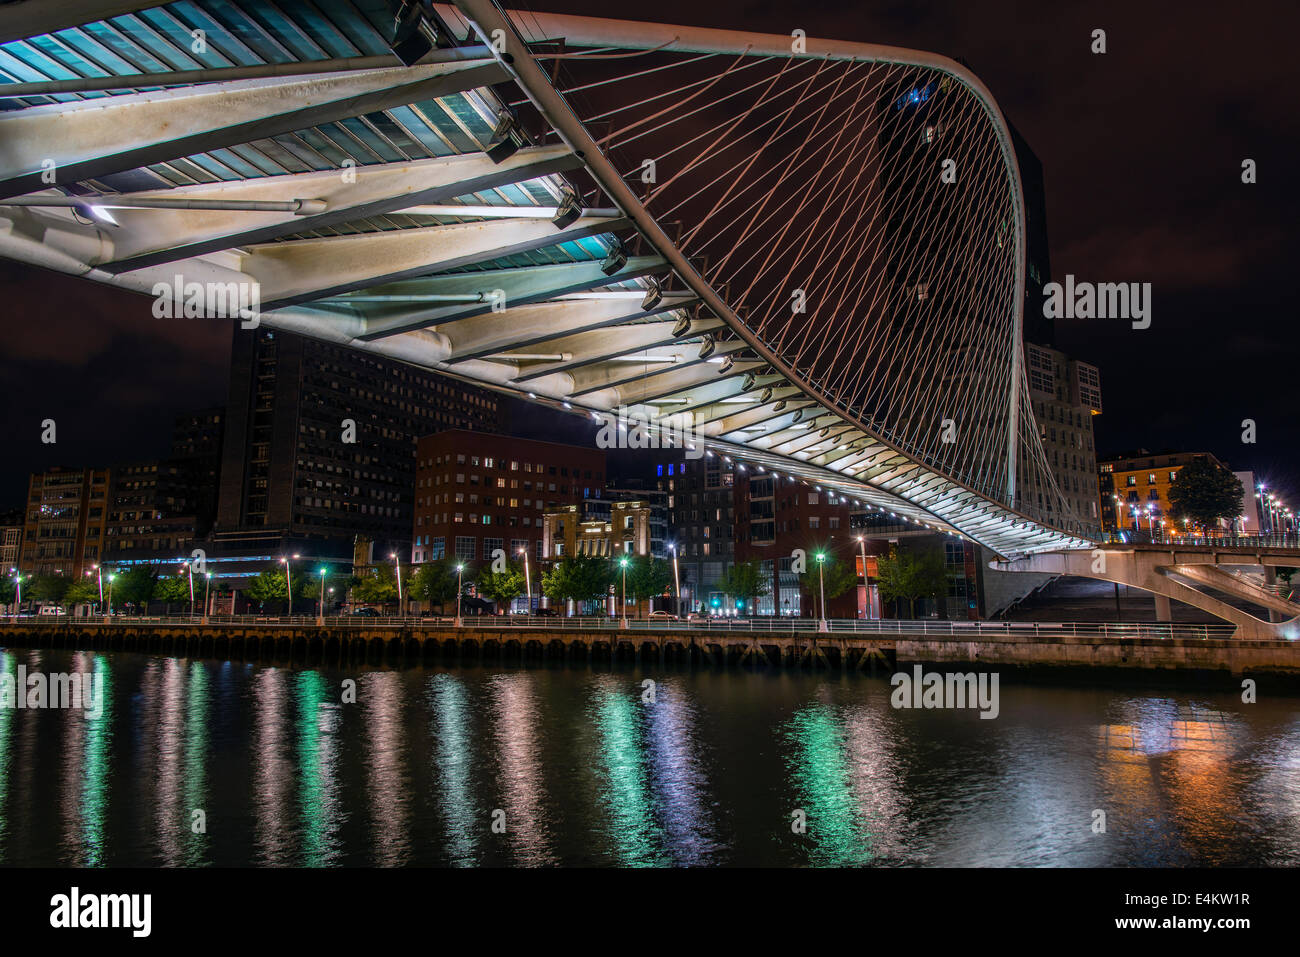 Zubizuri Brücke entworfen vom Architekten Santiago Calatrava, Bilbao, Baskenland, Spanien Stockfoto